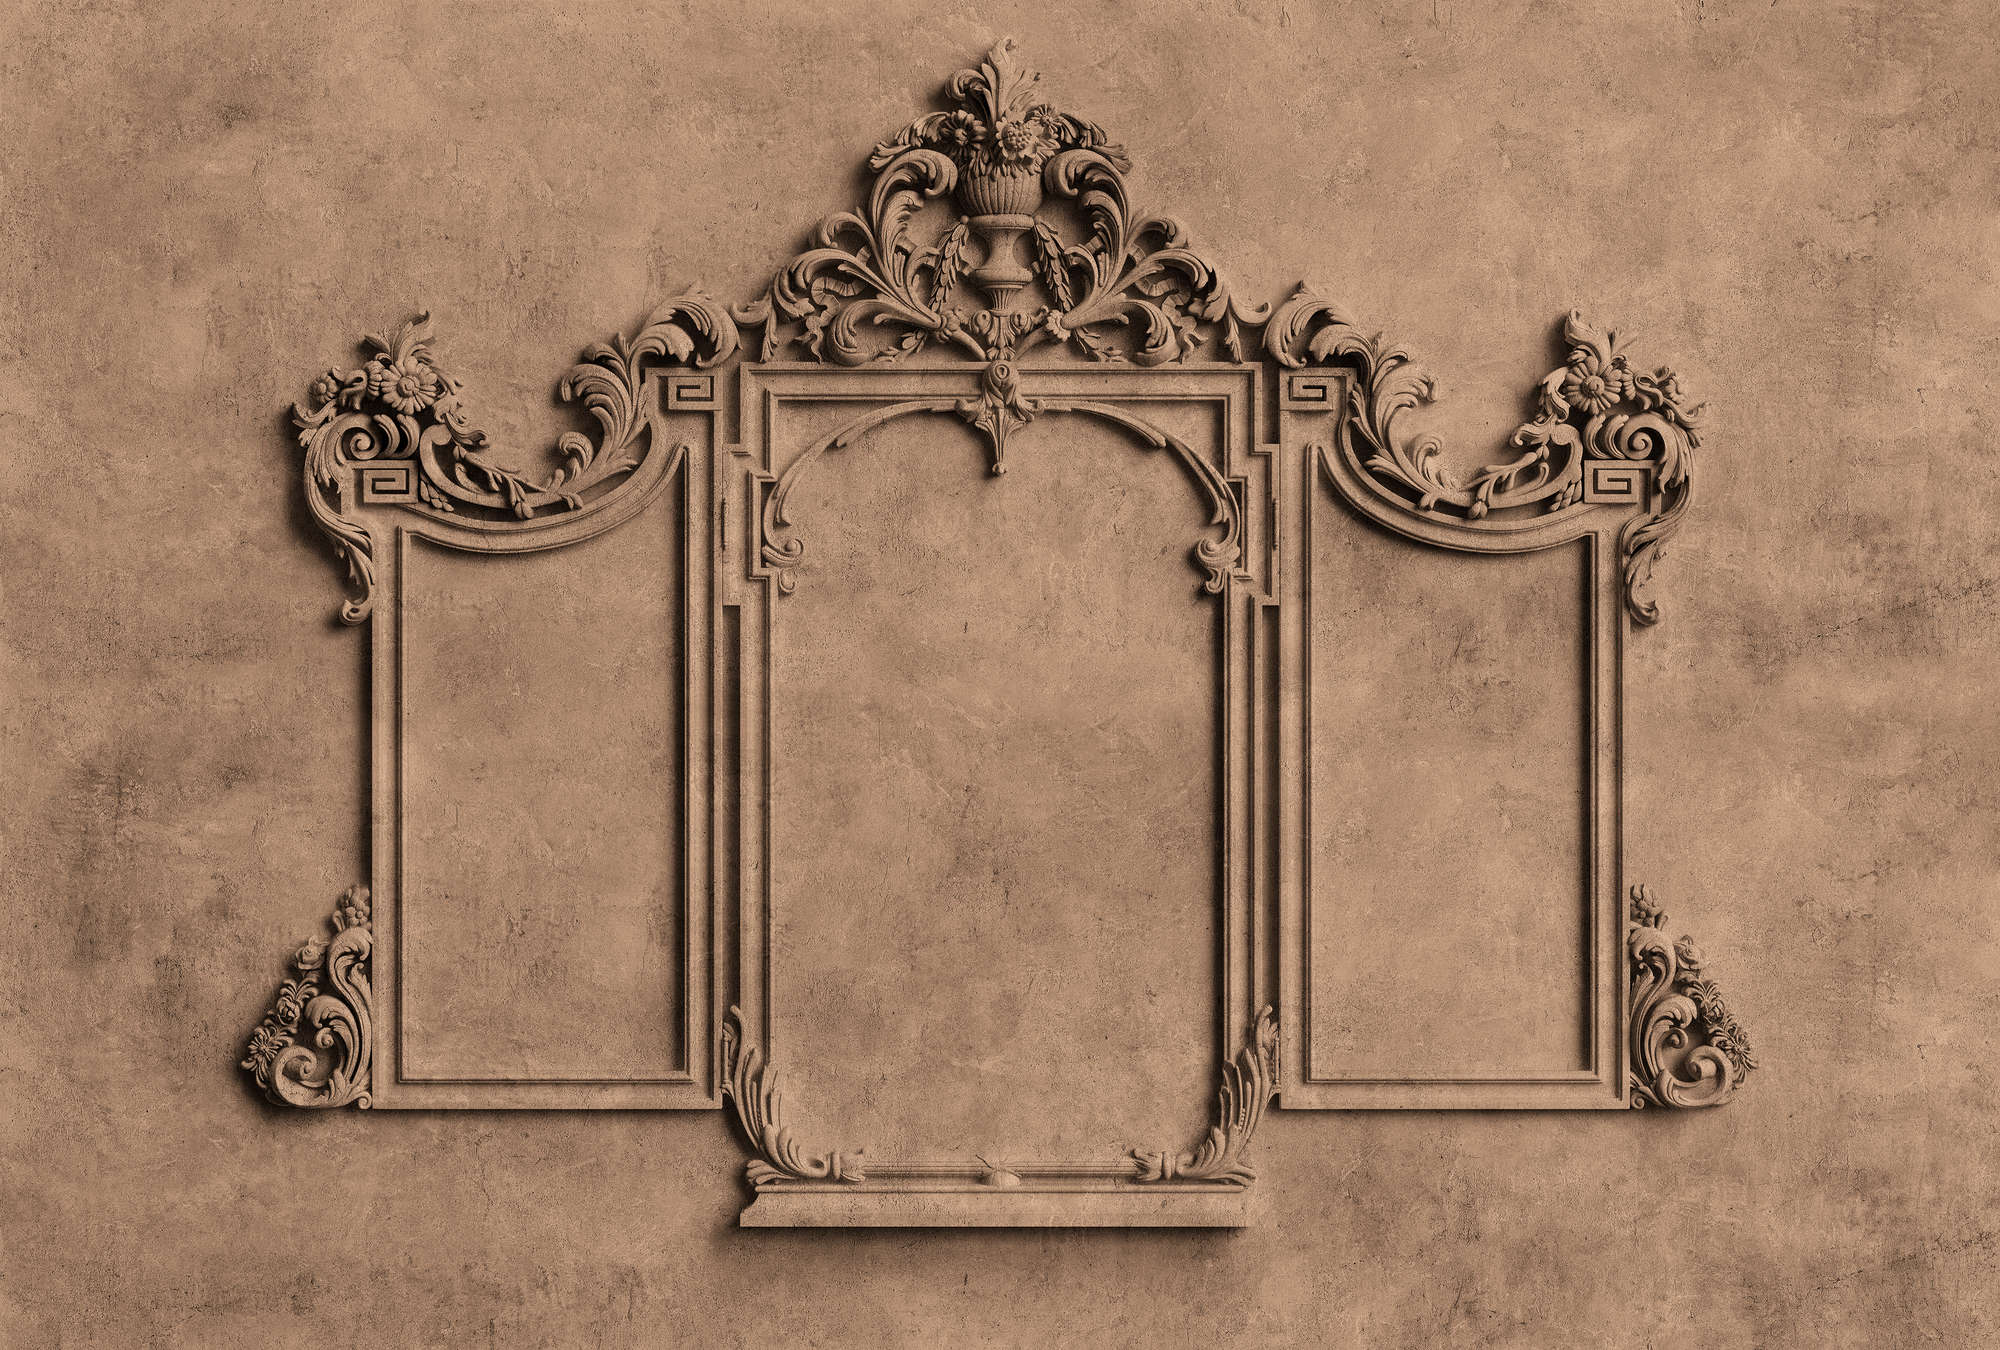             Lyon 1 - Muurschildering 3D stucco frame & gipslook in bruin
        